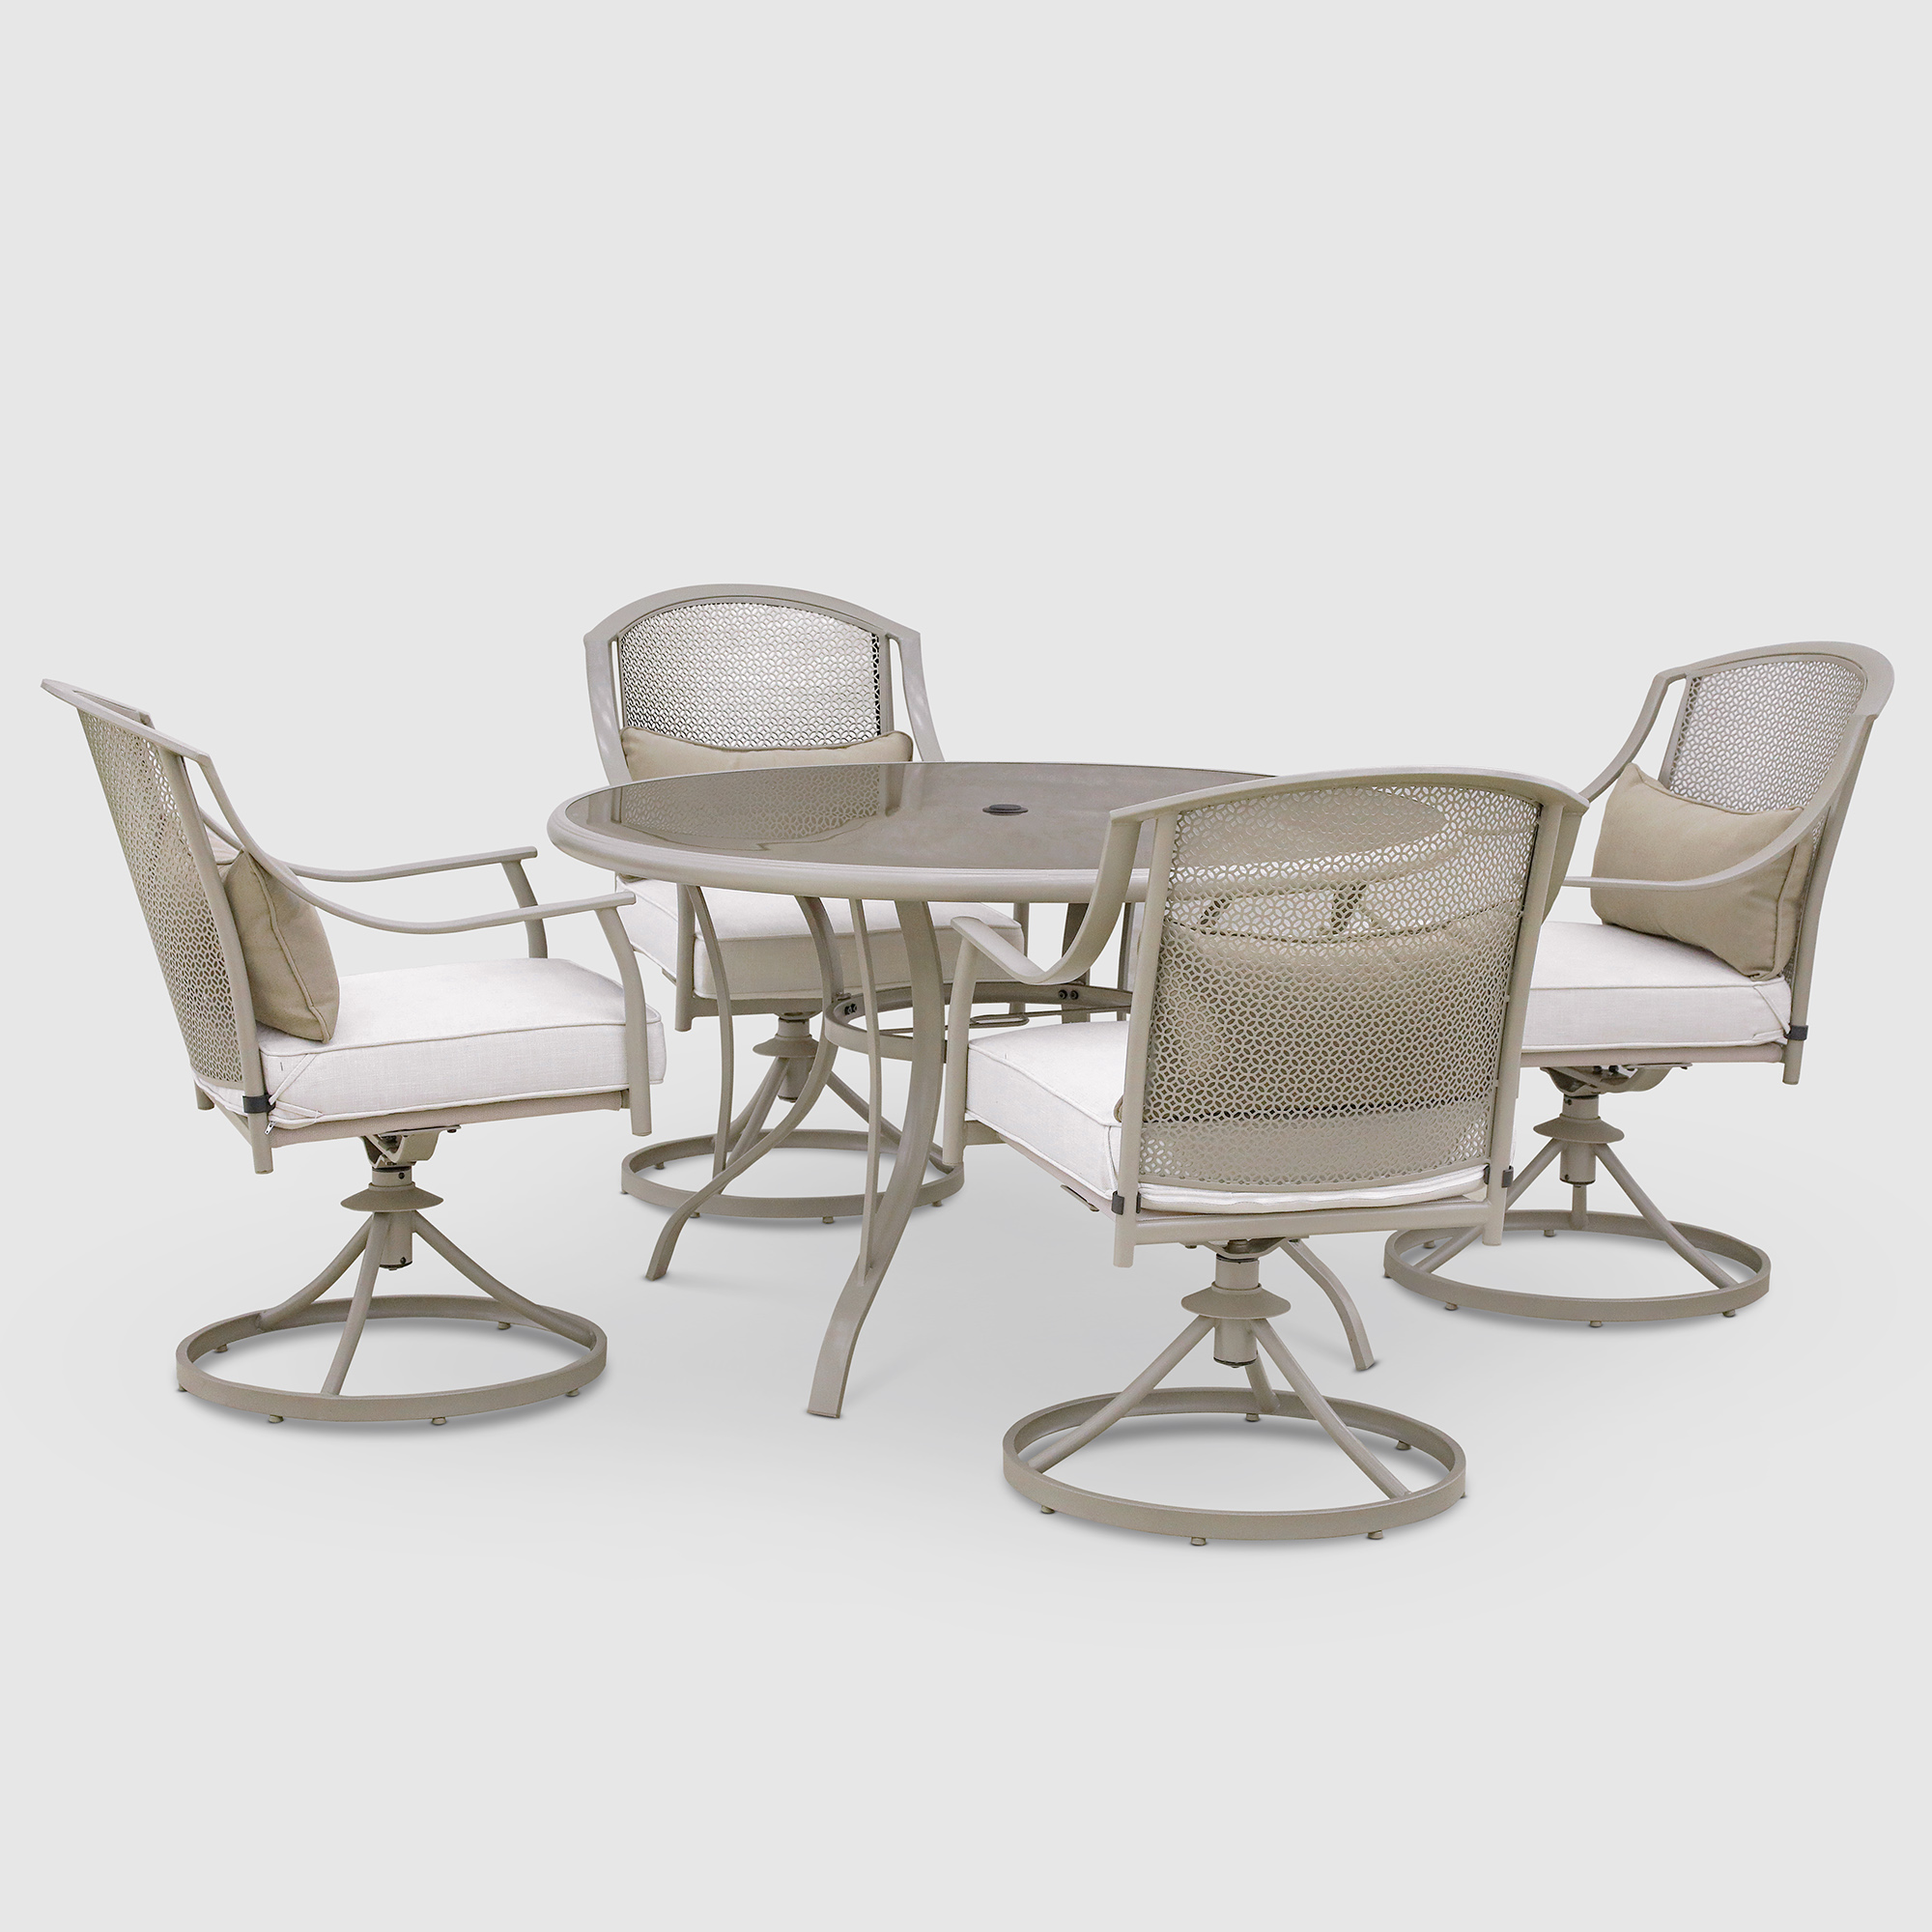 Комплект мебели Greenpatio с вращающимися стульями 5 предметов набор корзин 3 шт 36х14 39 см 30х12 34 см 23х8 25 см ива отбеленная